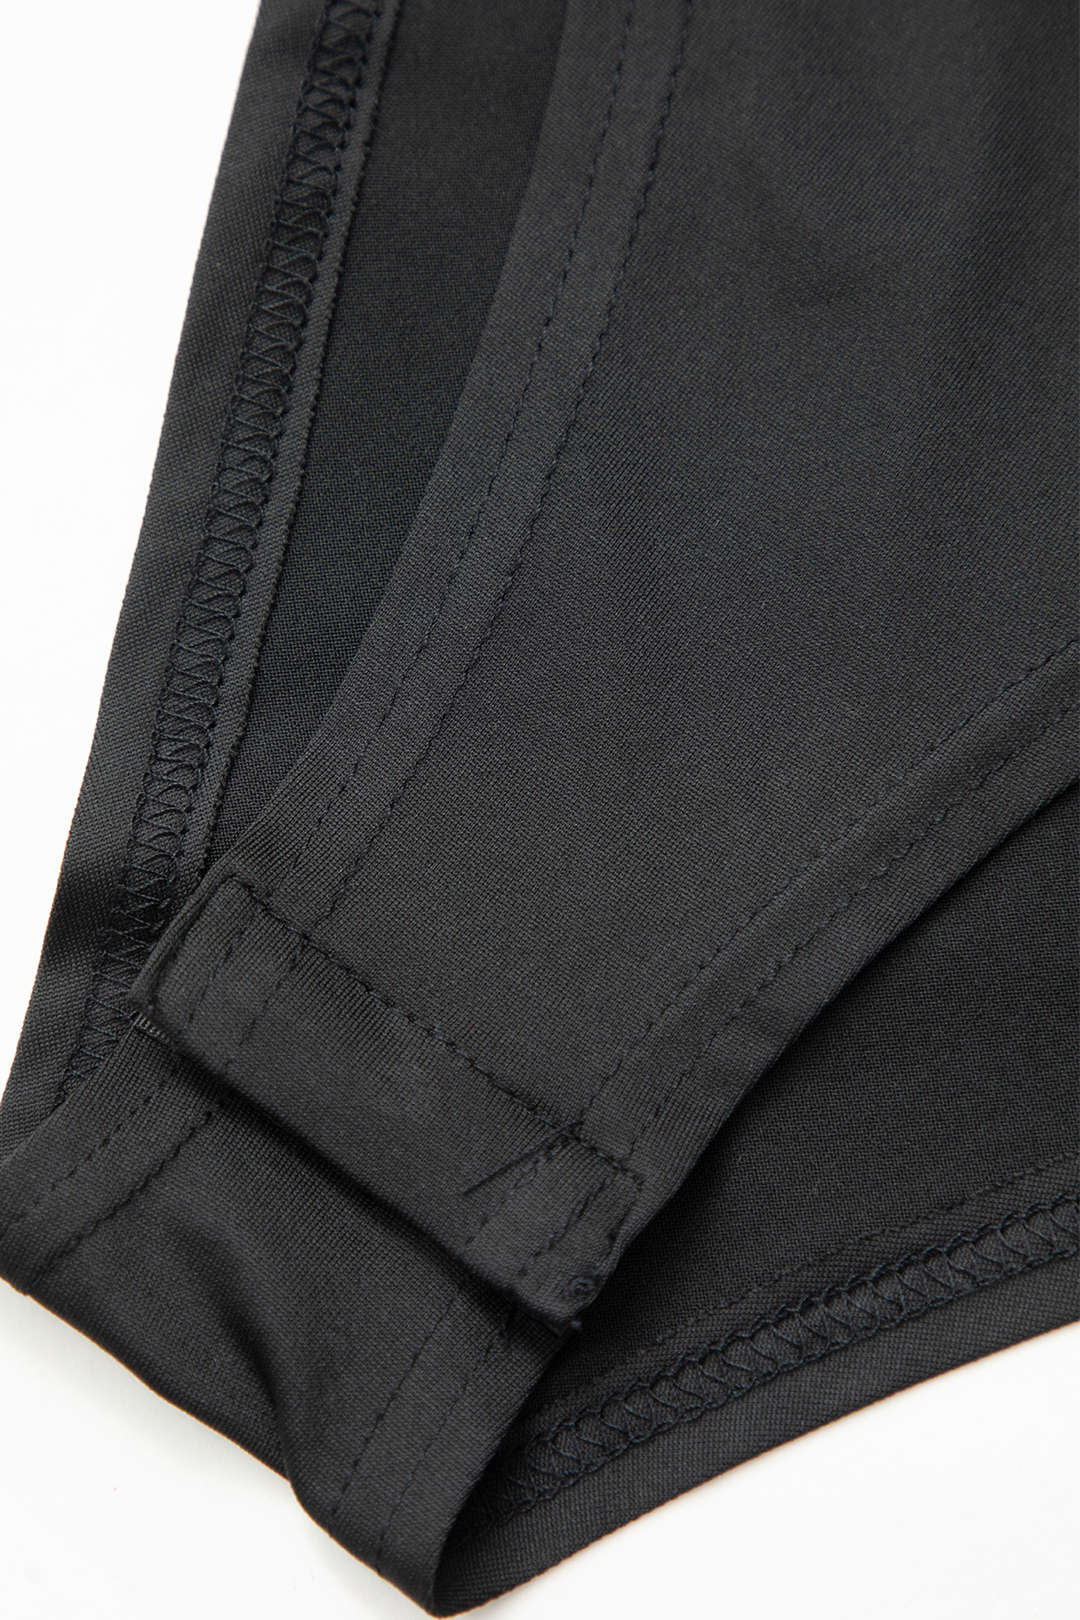 Mock Neck Faux Leather Paneled Long Sleeve Bodysuit